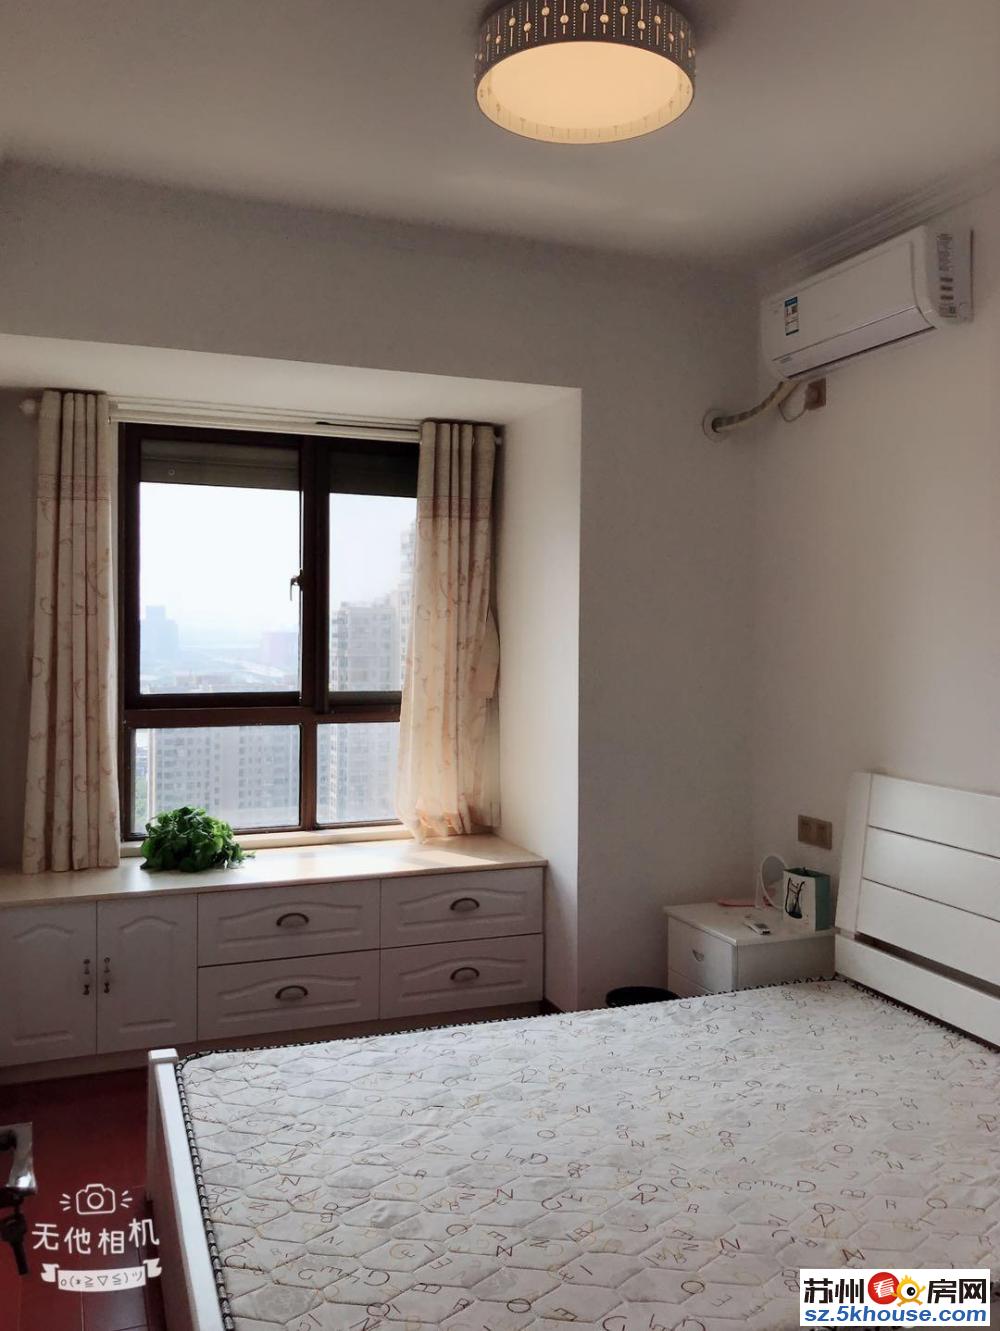 小石城香樟园豪装3房4空调品牌家电保养很新有钥匙